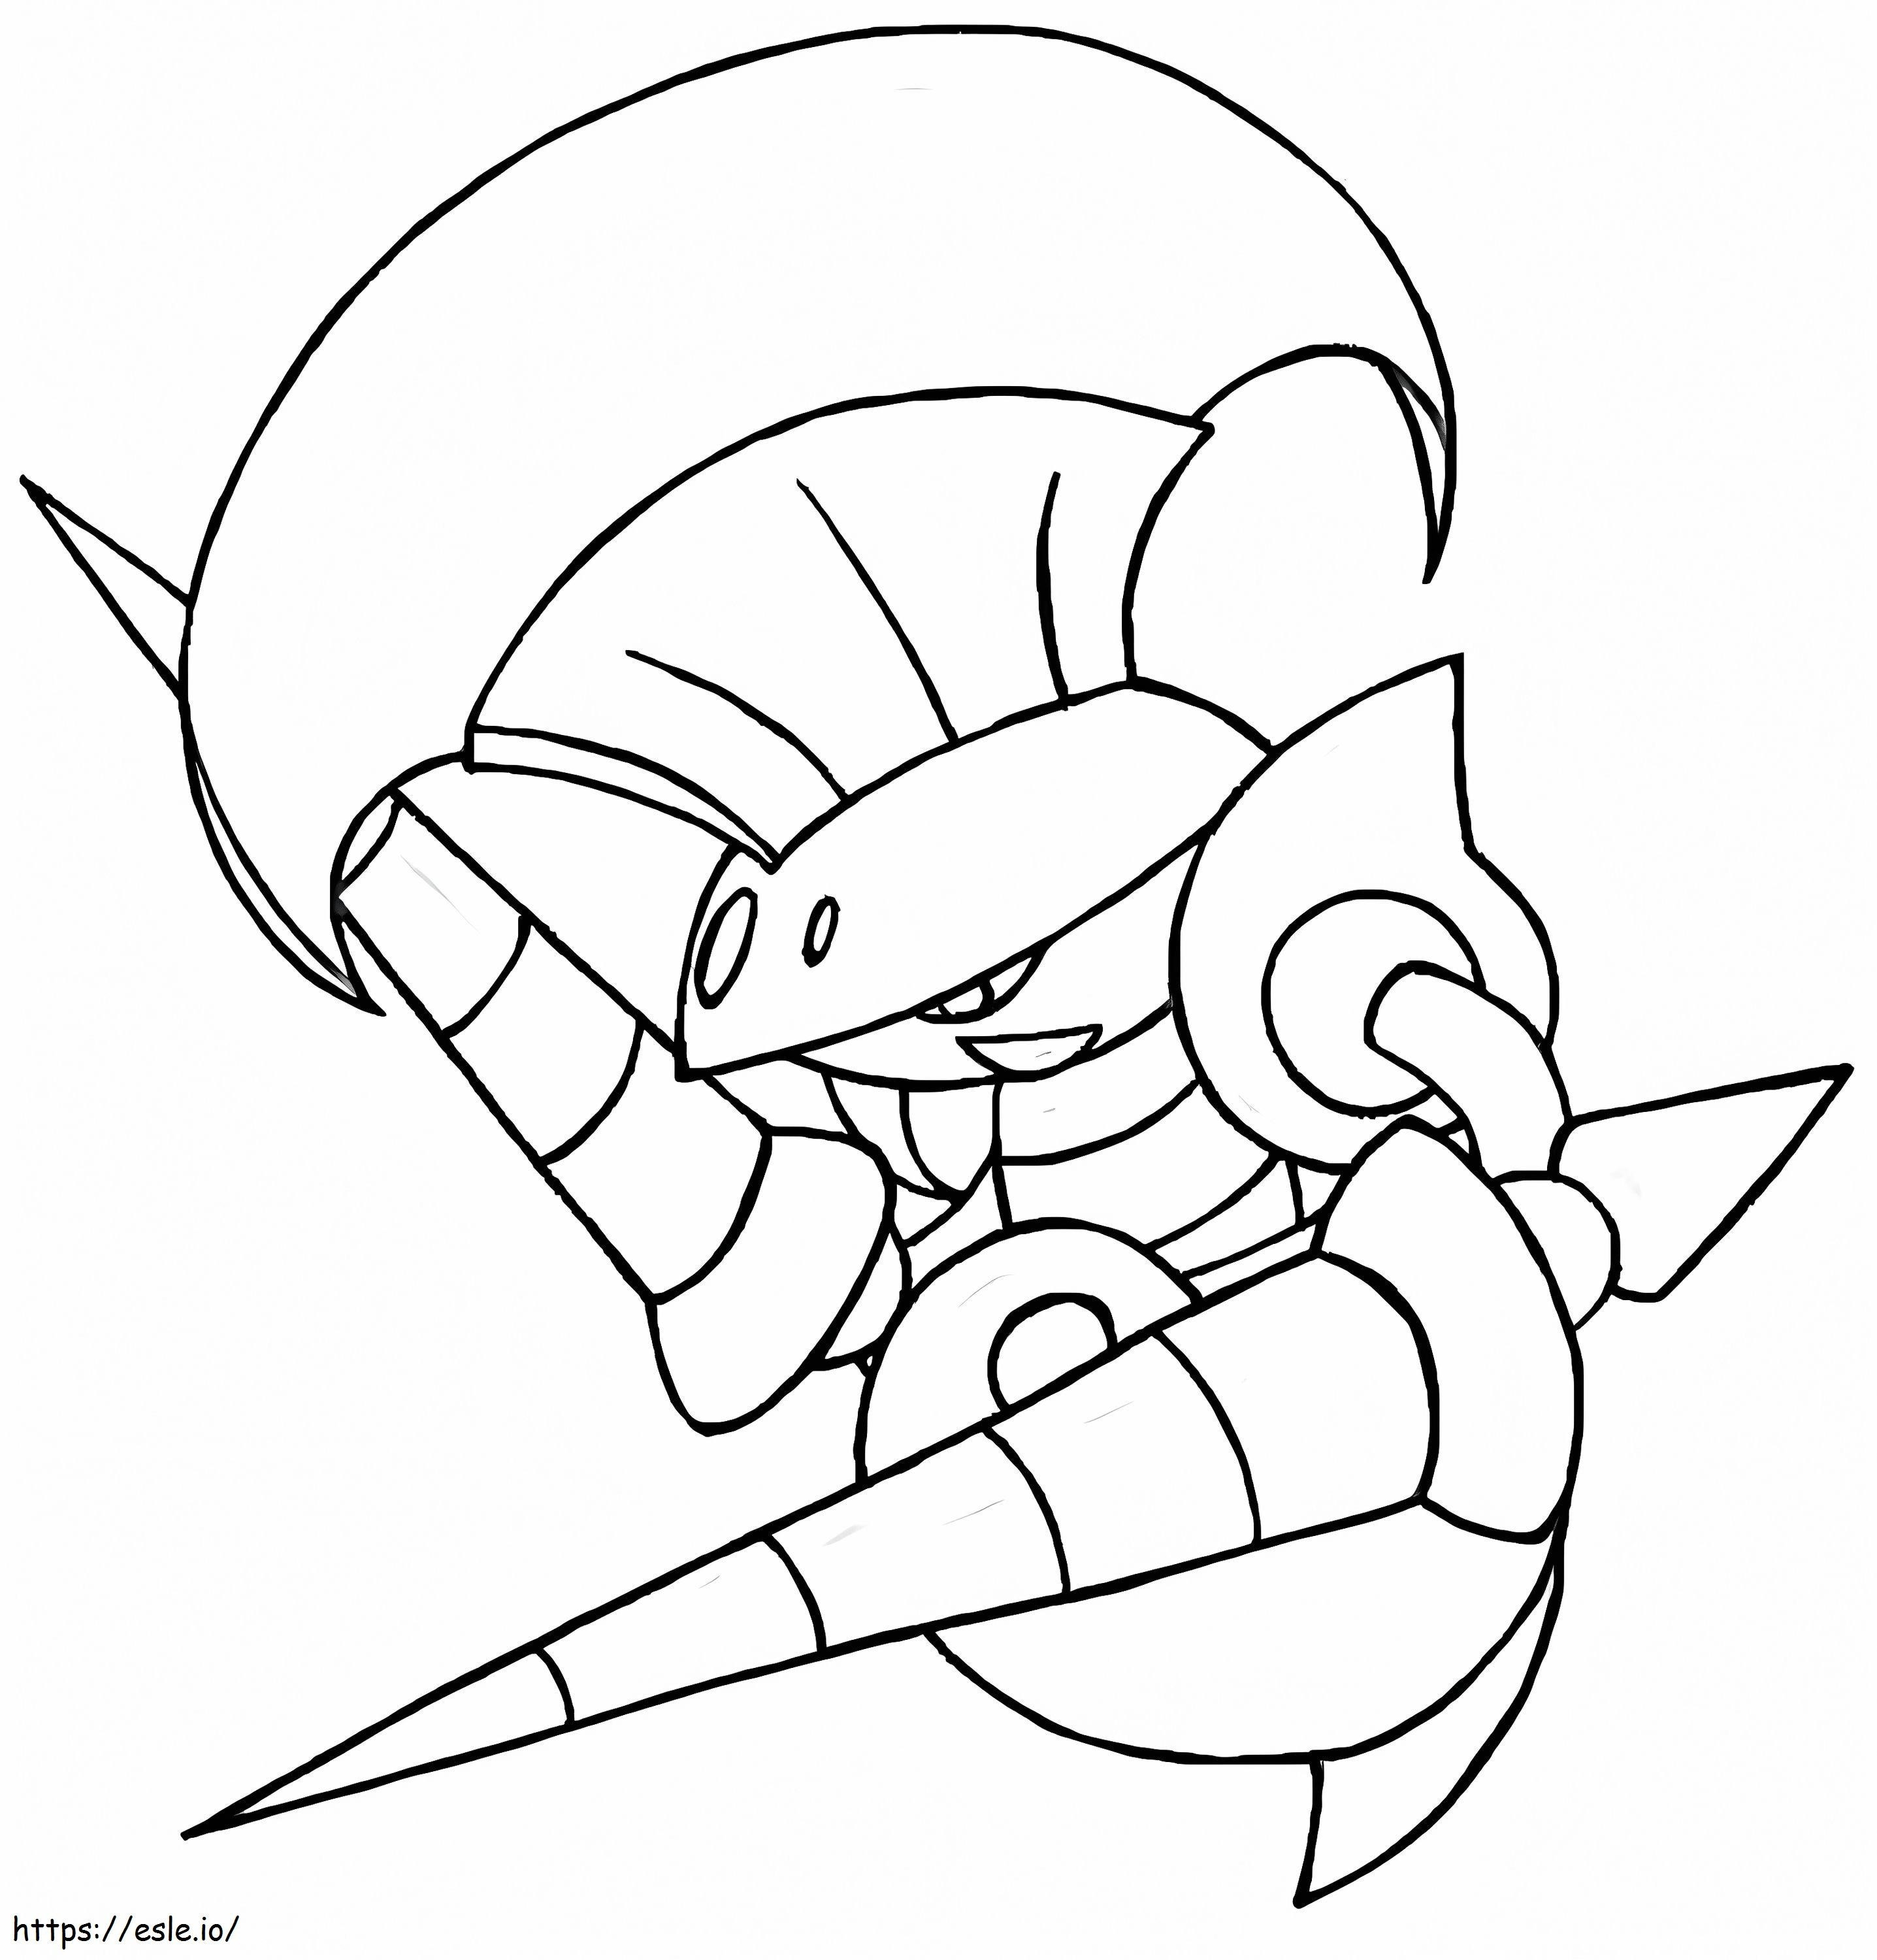 Free Escavalier Pokemon coloring page